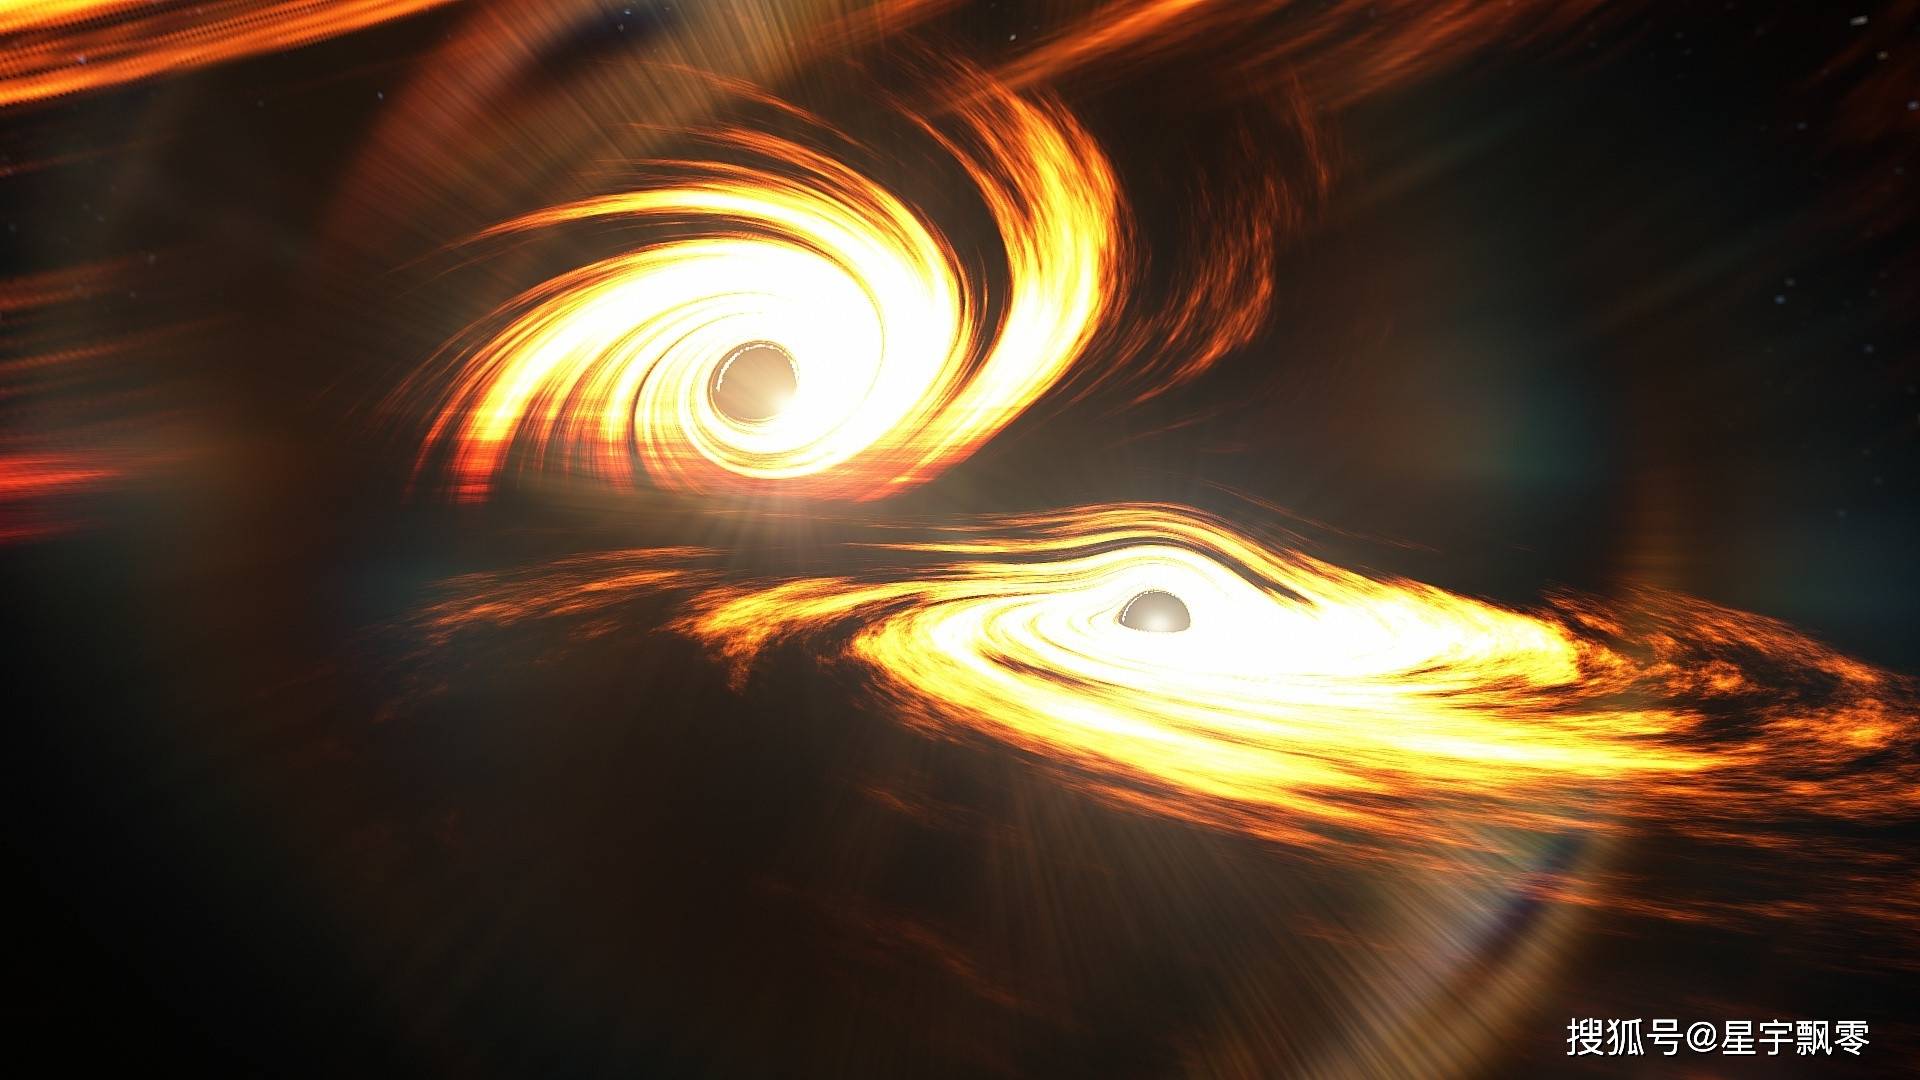 2020年9月21日——中国慧眼卫星发现距离黑洞最近的超高速喷流